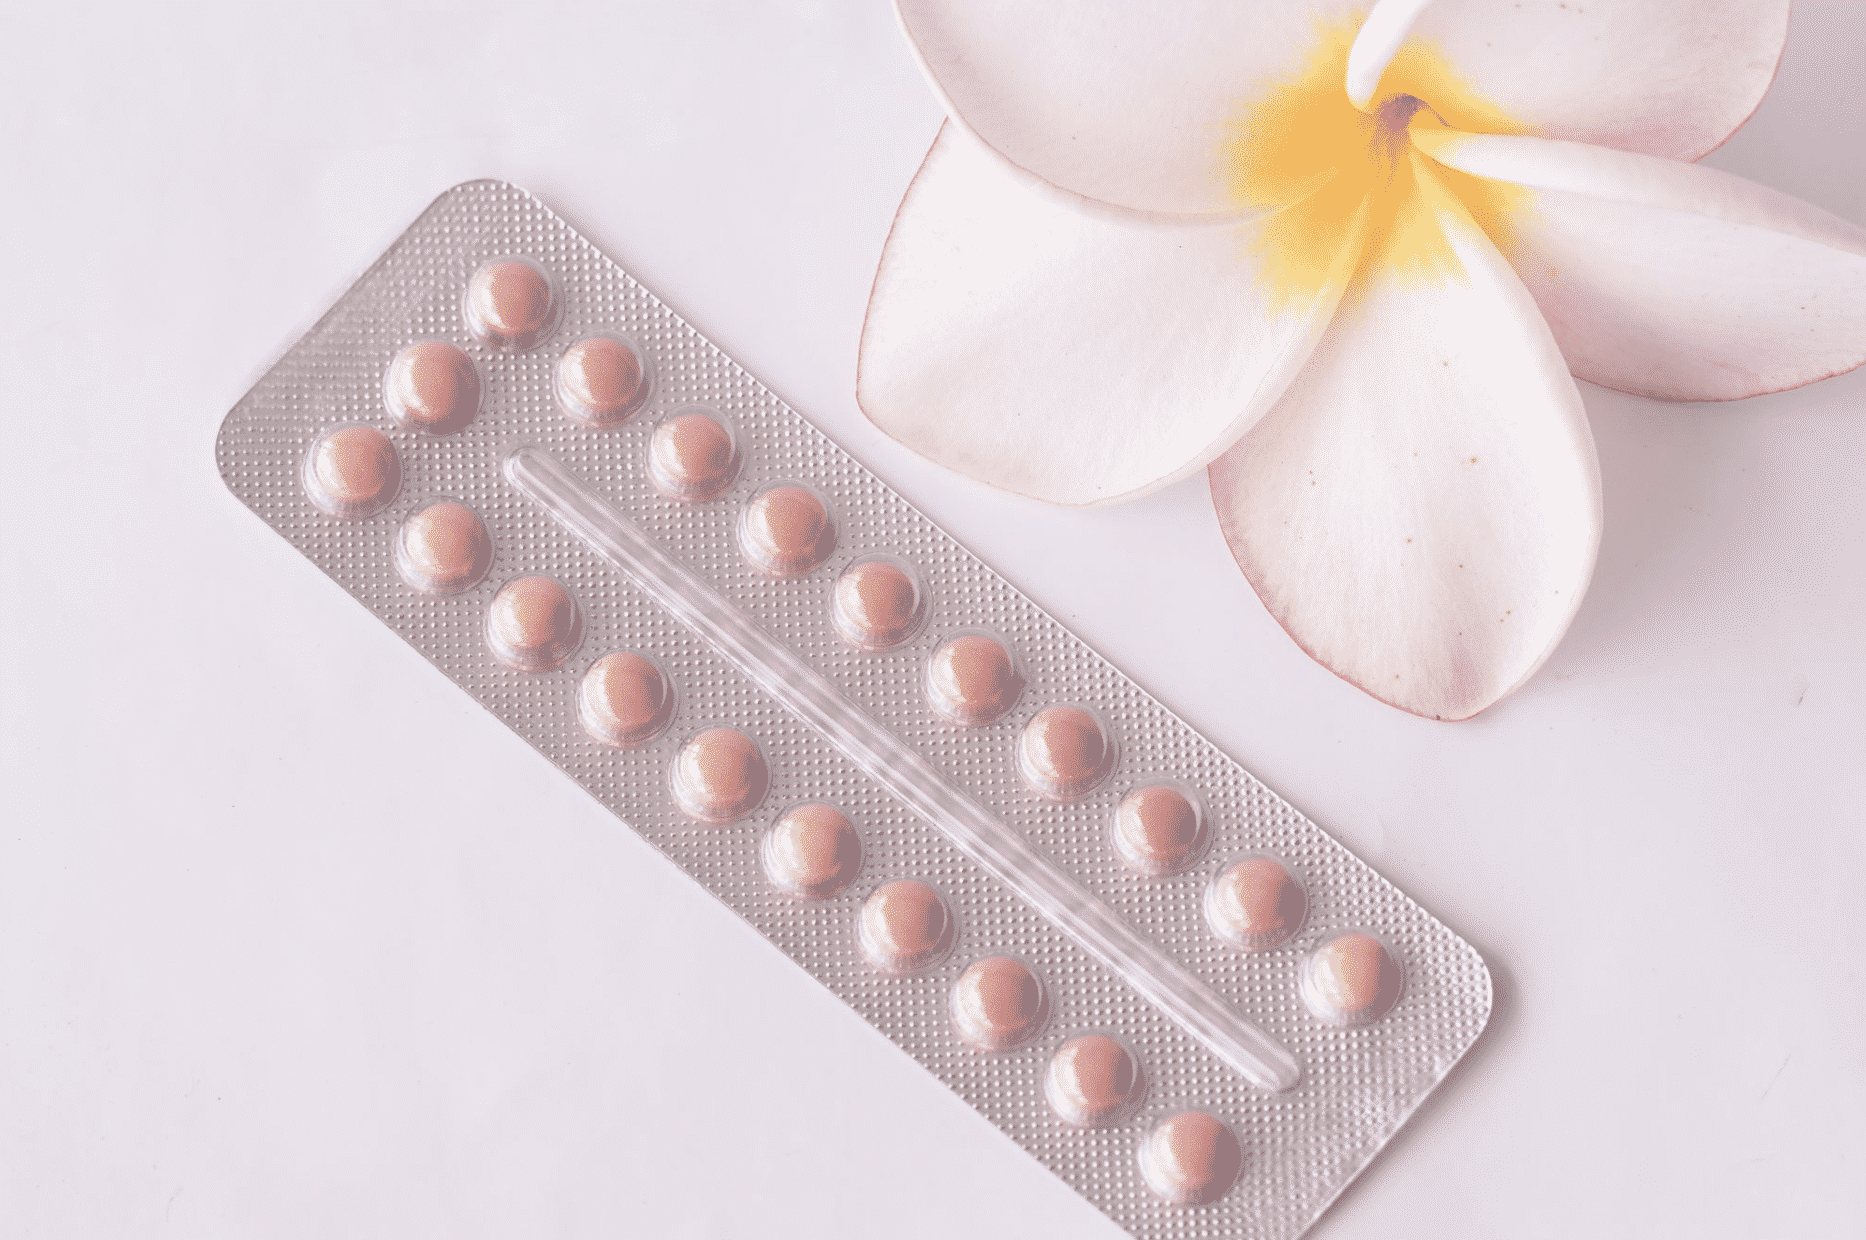 Pillola anticoncezionale gratis in Italia, Aifa sta valutando: ancora nel Bel Paese è un “lusso”